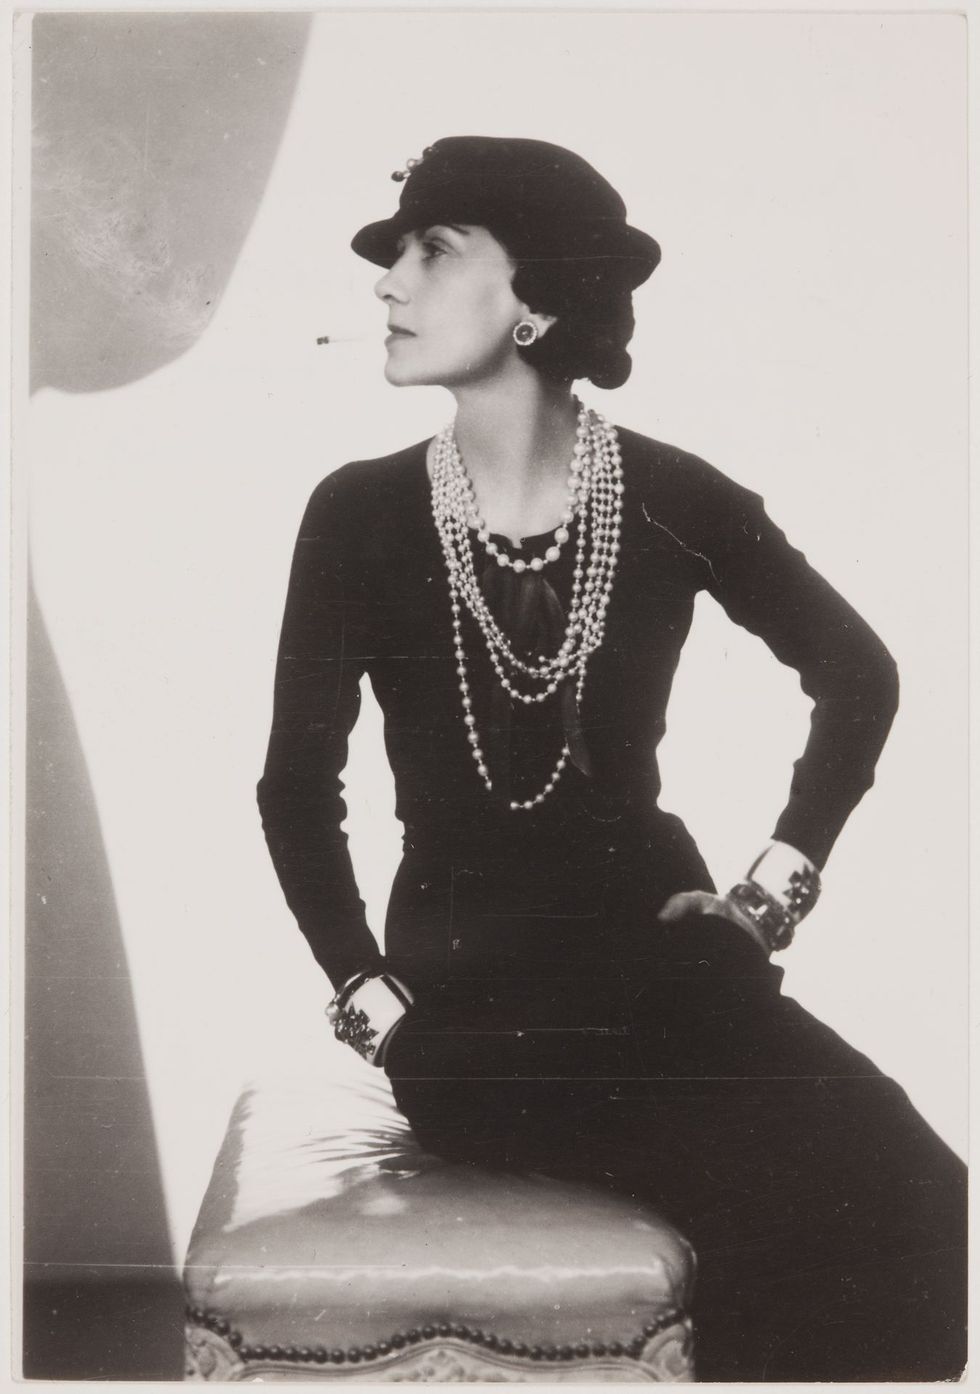 Man Ray, Gabrielle Chanel, 